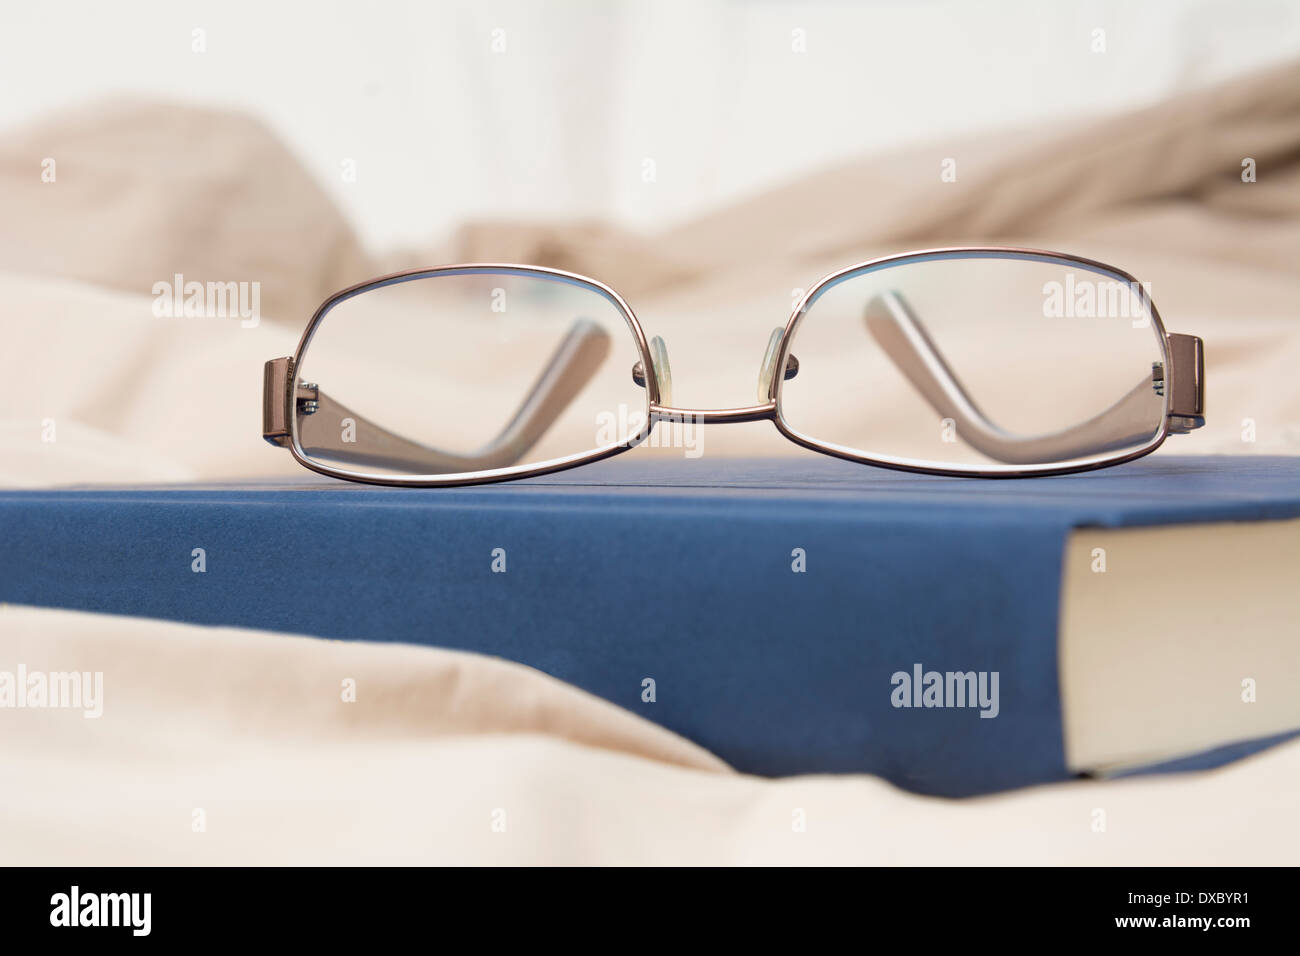 Détail photo montrant une paire de lunettes et un livre sitting on bed Banque D'Images